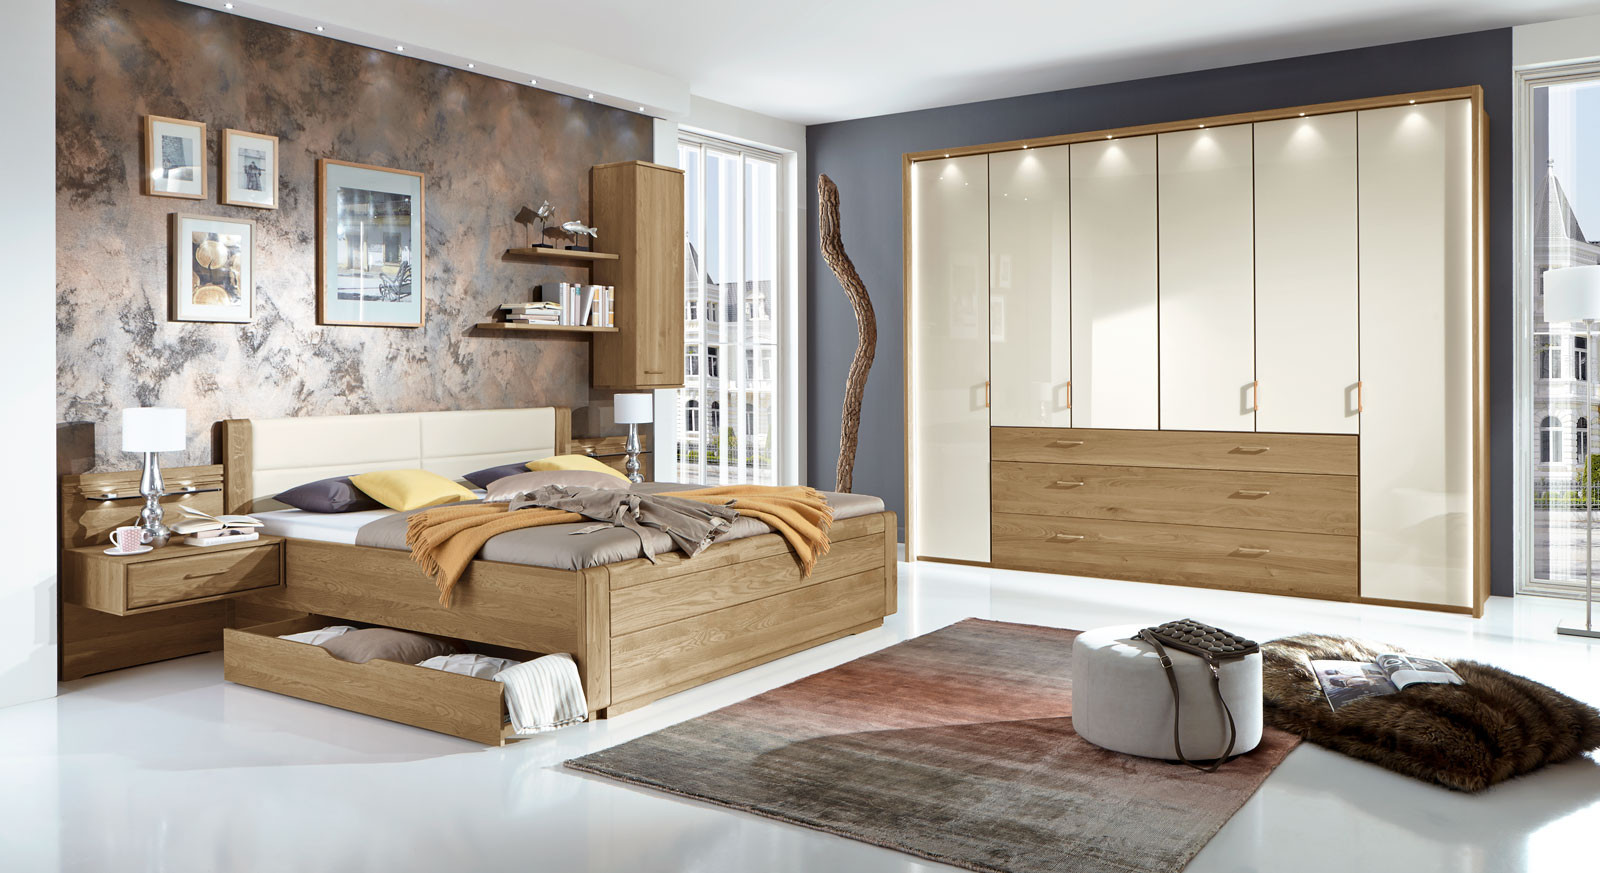 Schlafzimmer Modern
 Teilmassives Schlafzimmer komplett mit Schubkastenbett